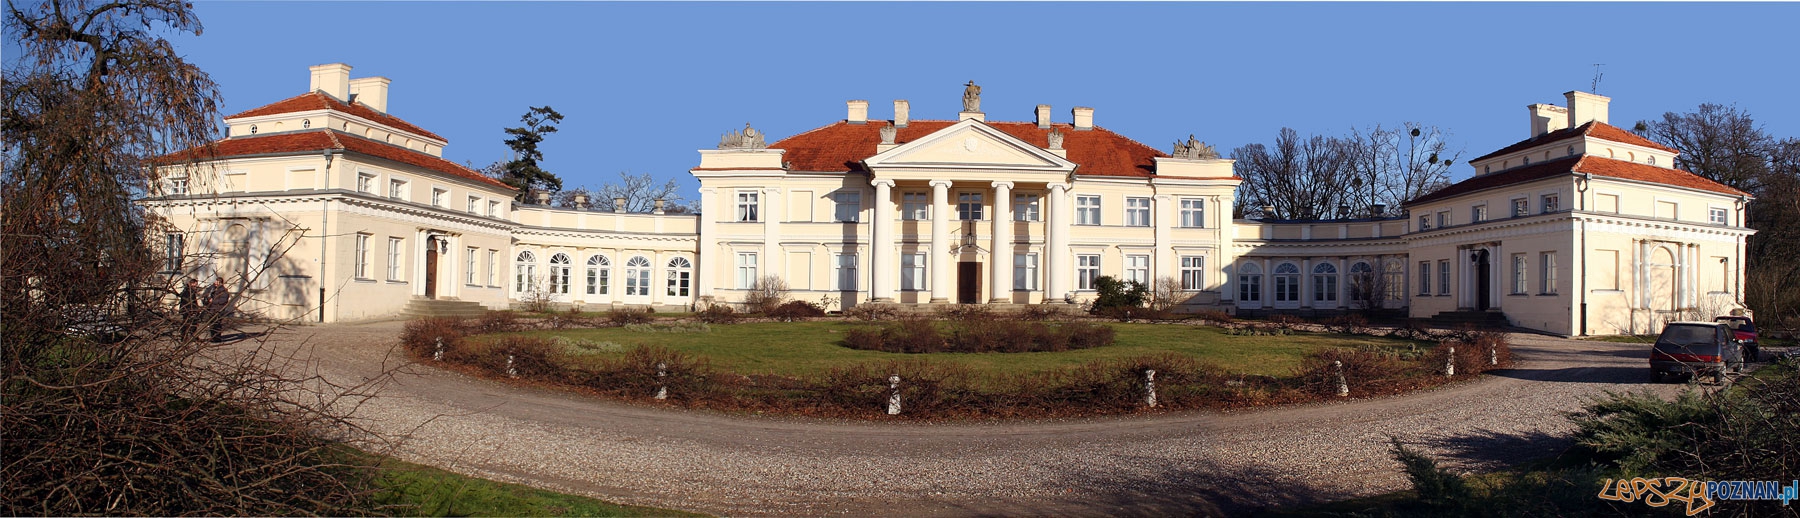 Pałac w Śmiełowie Foto: CC/wikipedia